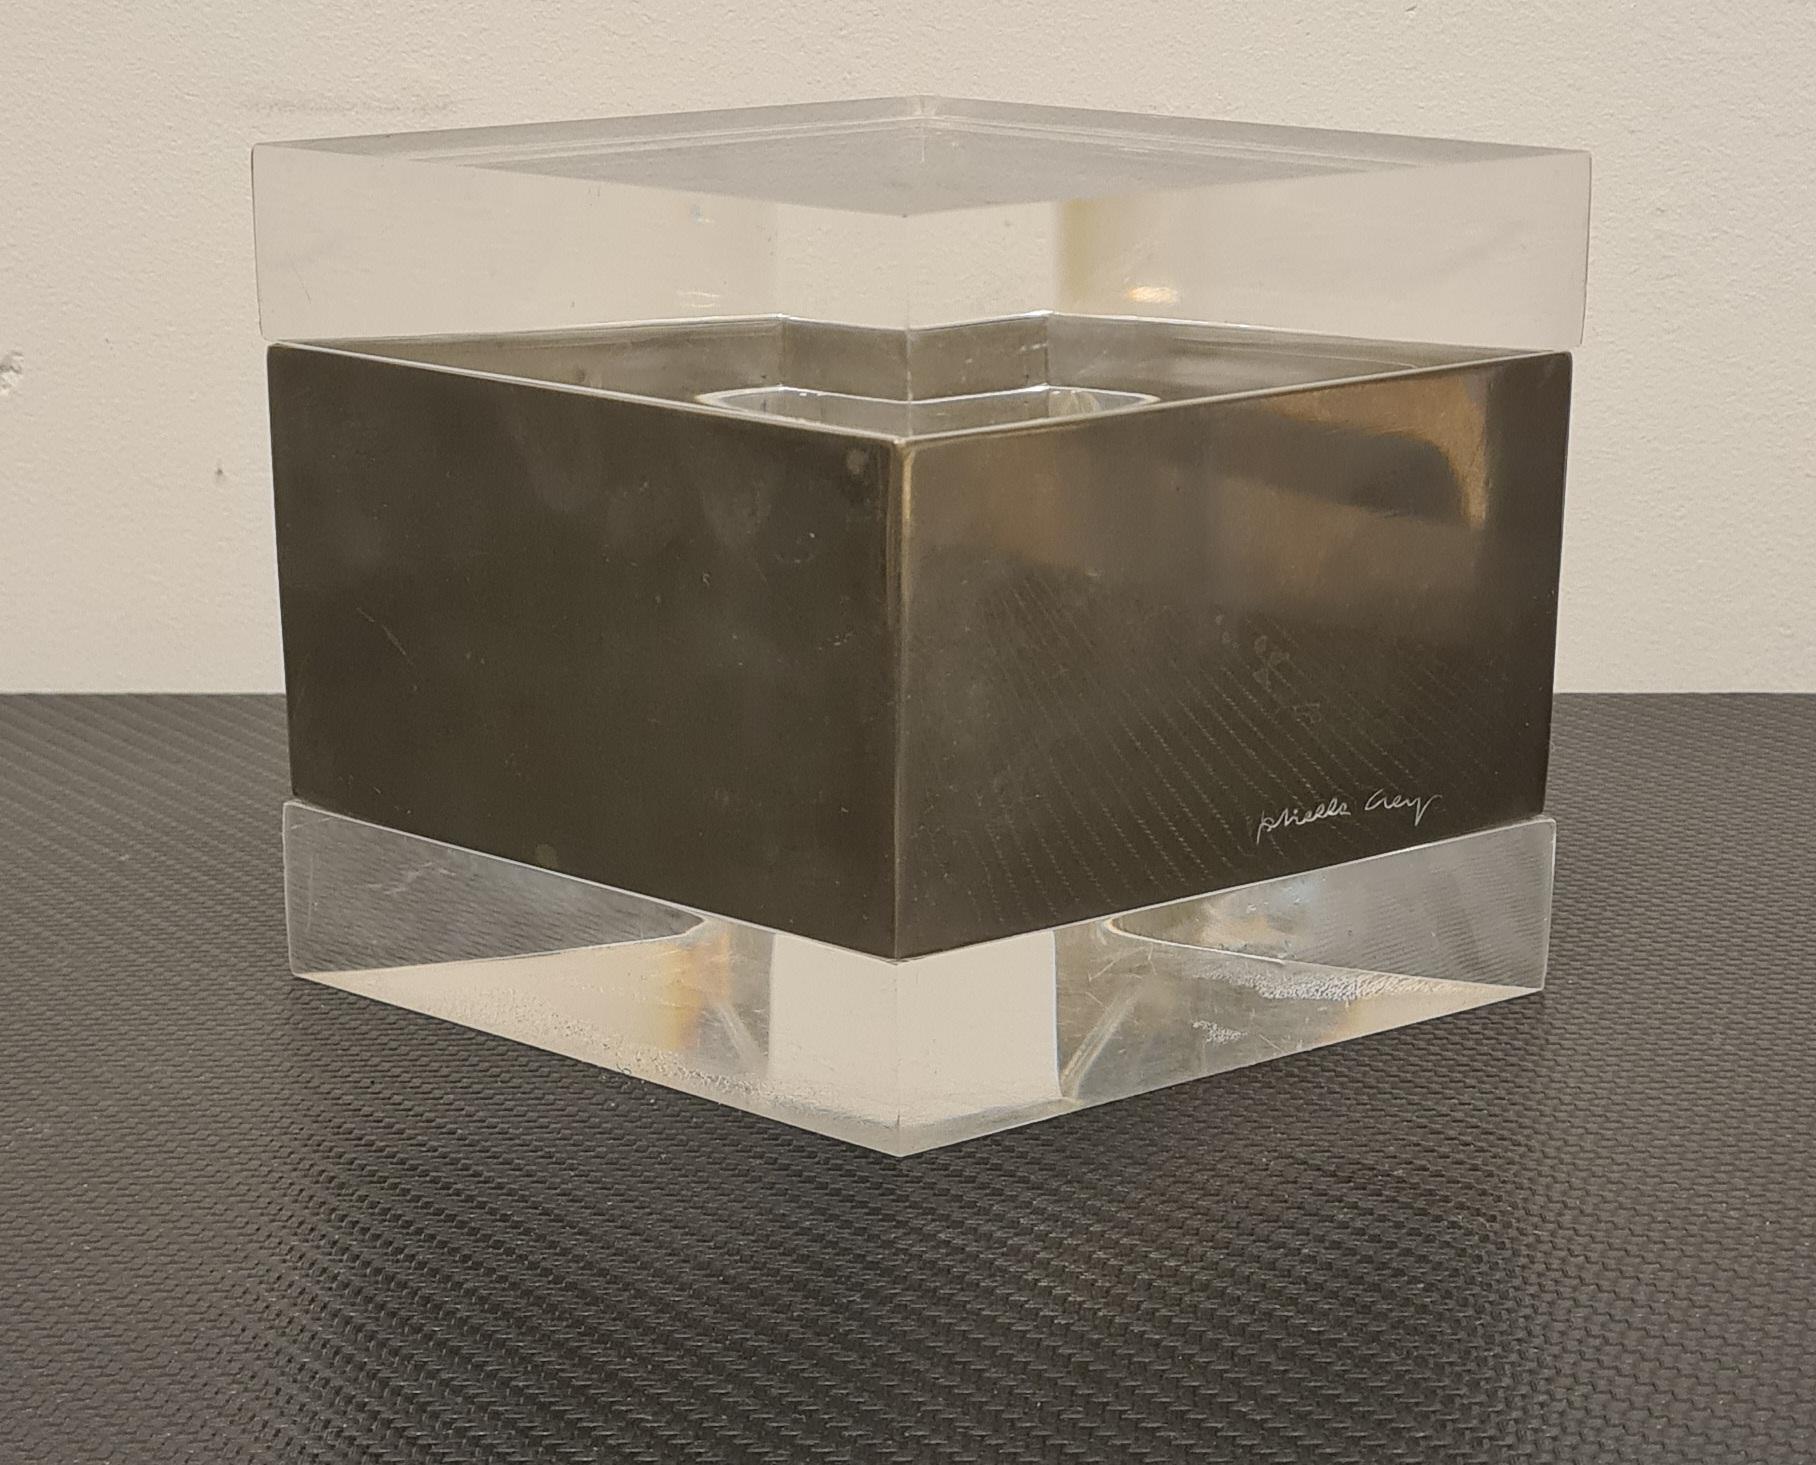 Boîte avec couvercle de la designer Gabriella Crespi.

Rare et indispensable boîte rhomboïdale en lucite et métal argenté.

La lucite est une variété de polyméthacrylate de méthyle, communément appelé plexiglas ou perspex. Ce matériau a été inventé